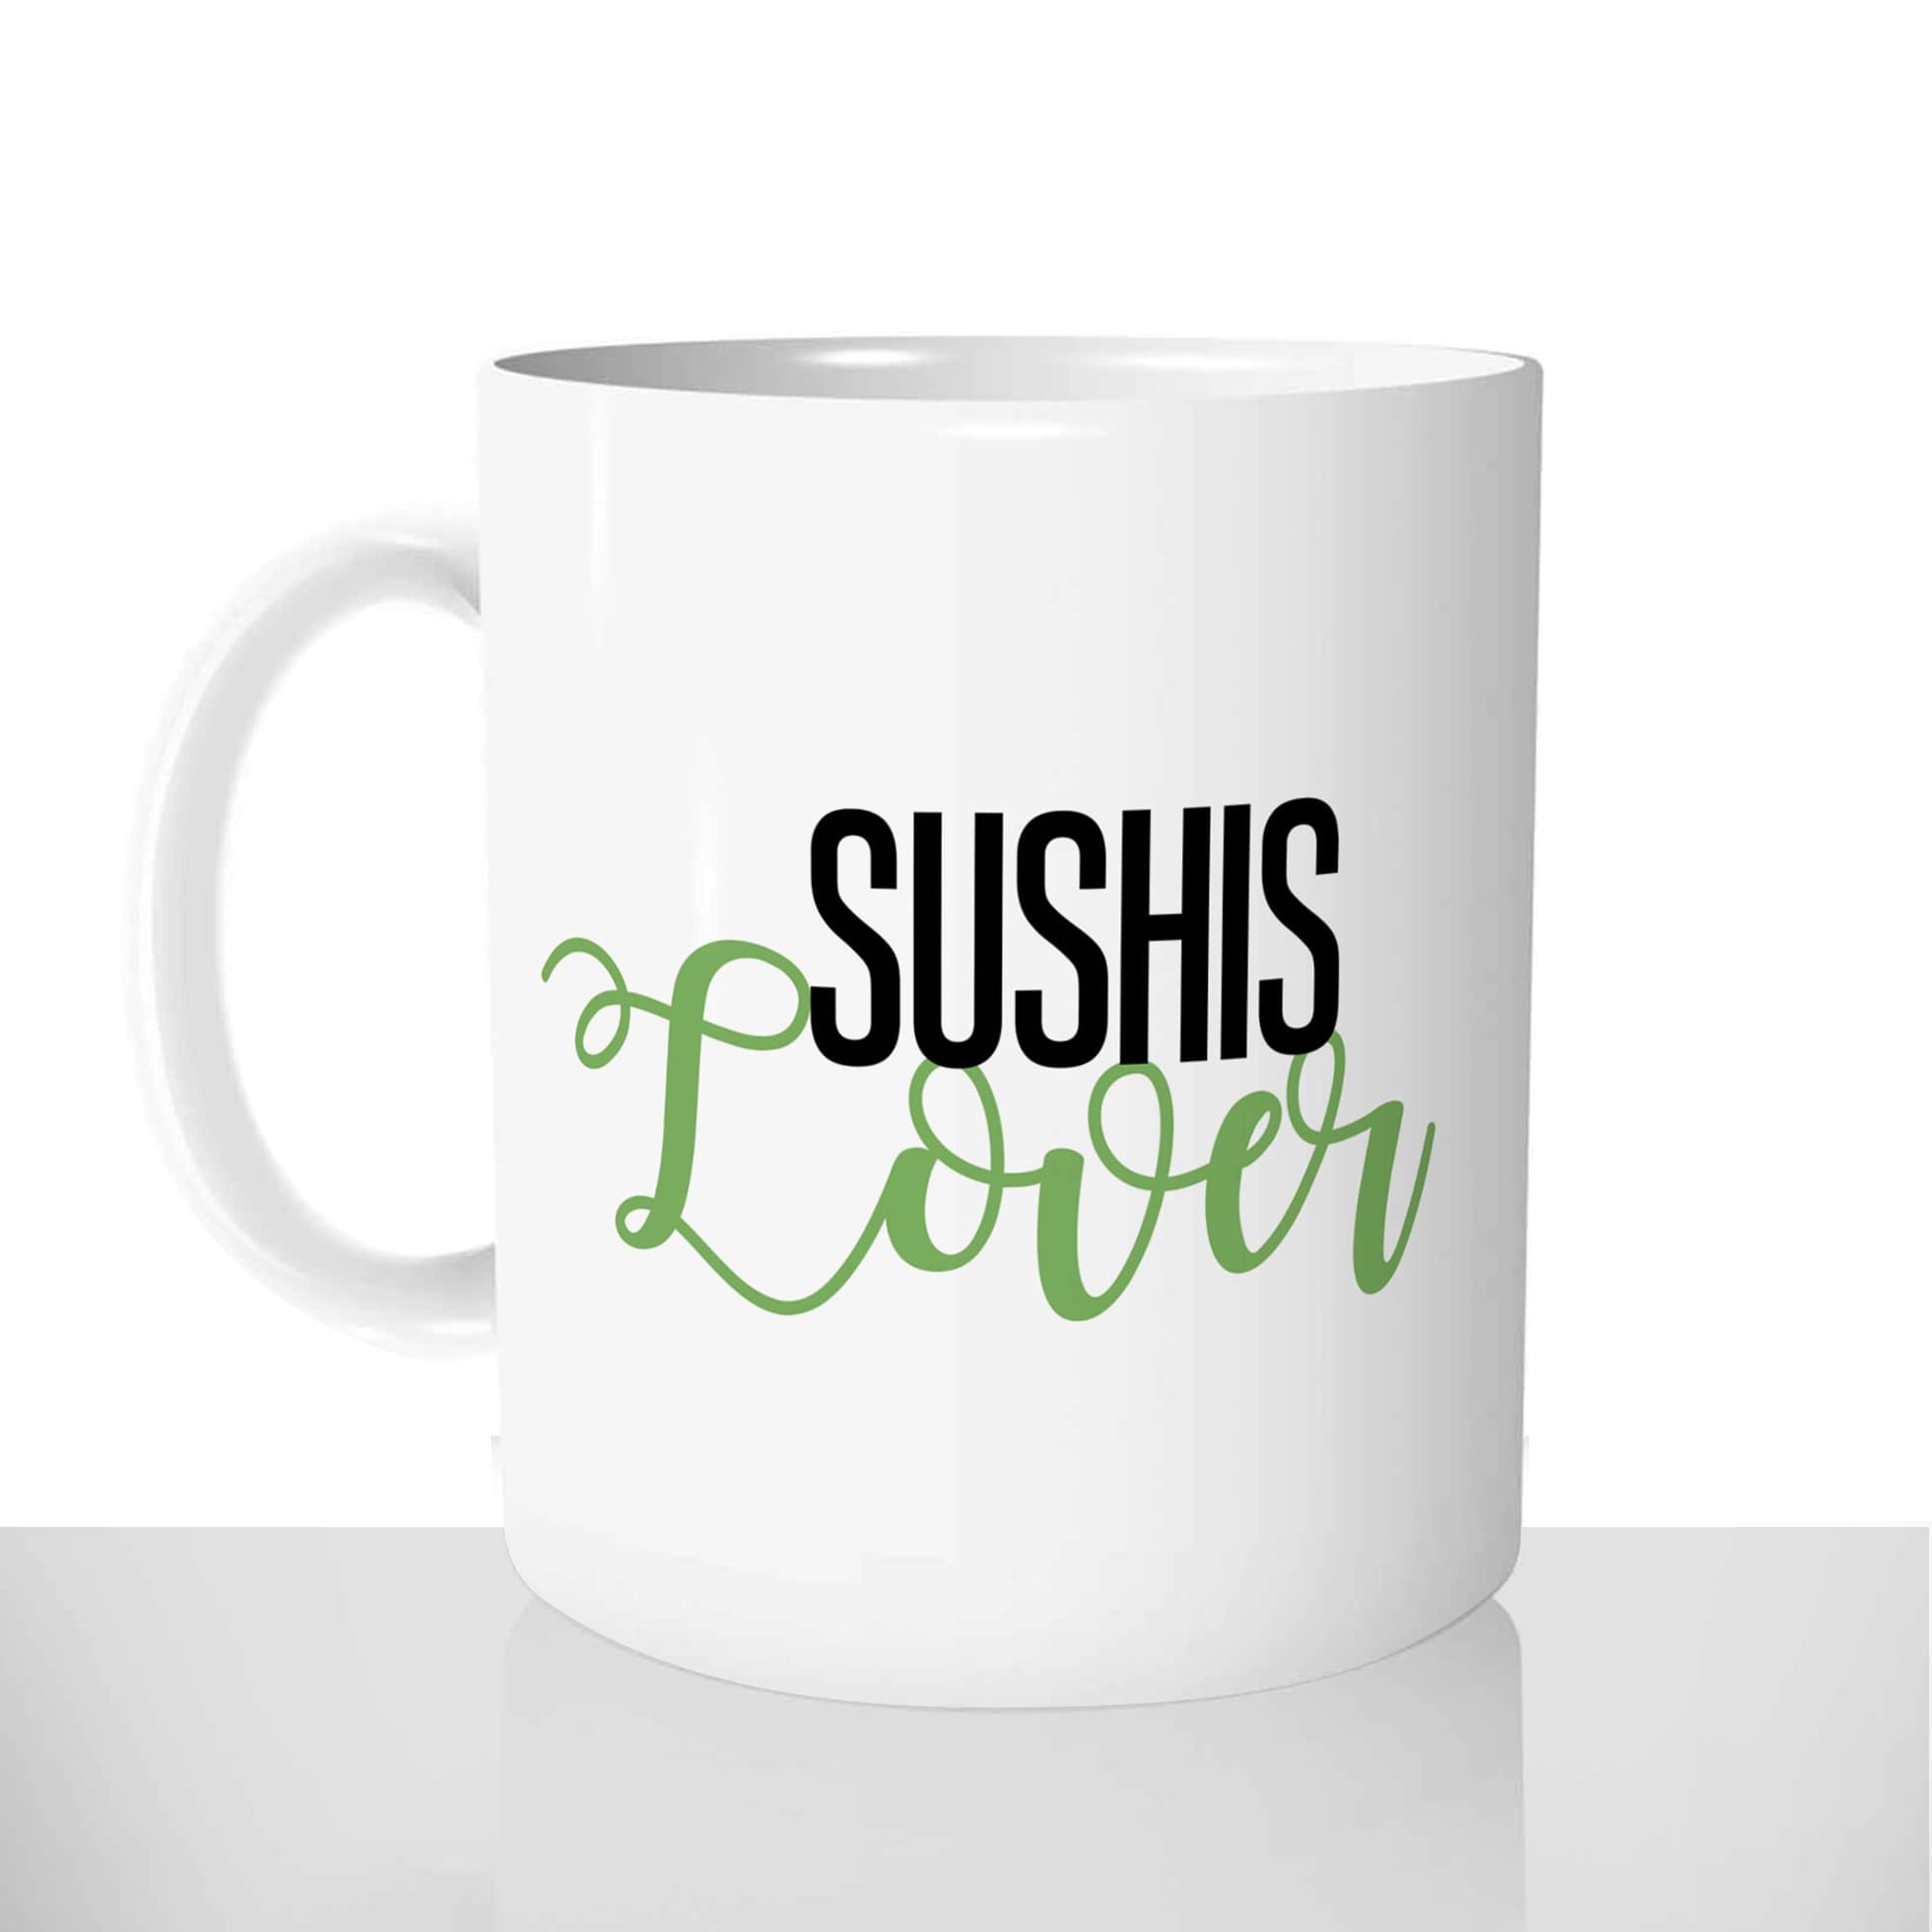 mug classique en céramique 11oz personnalisé personnalisation photo gourmand sushi lover chou offrir cadeau